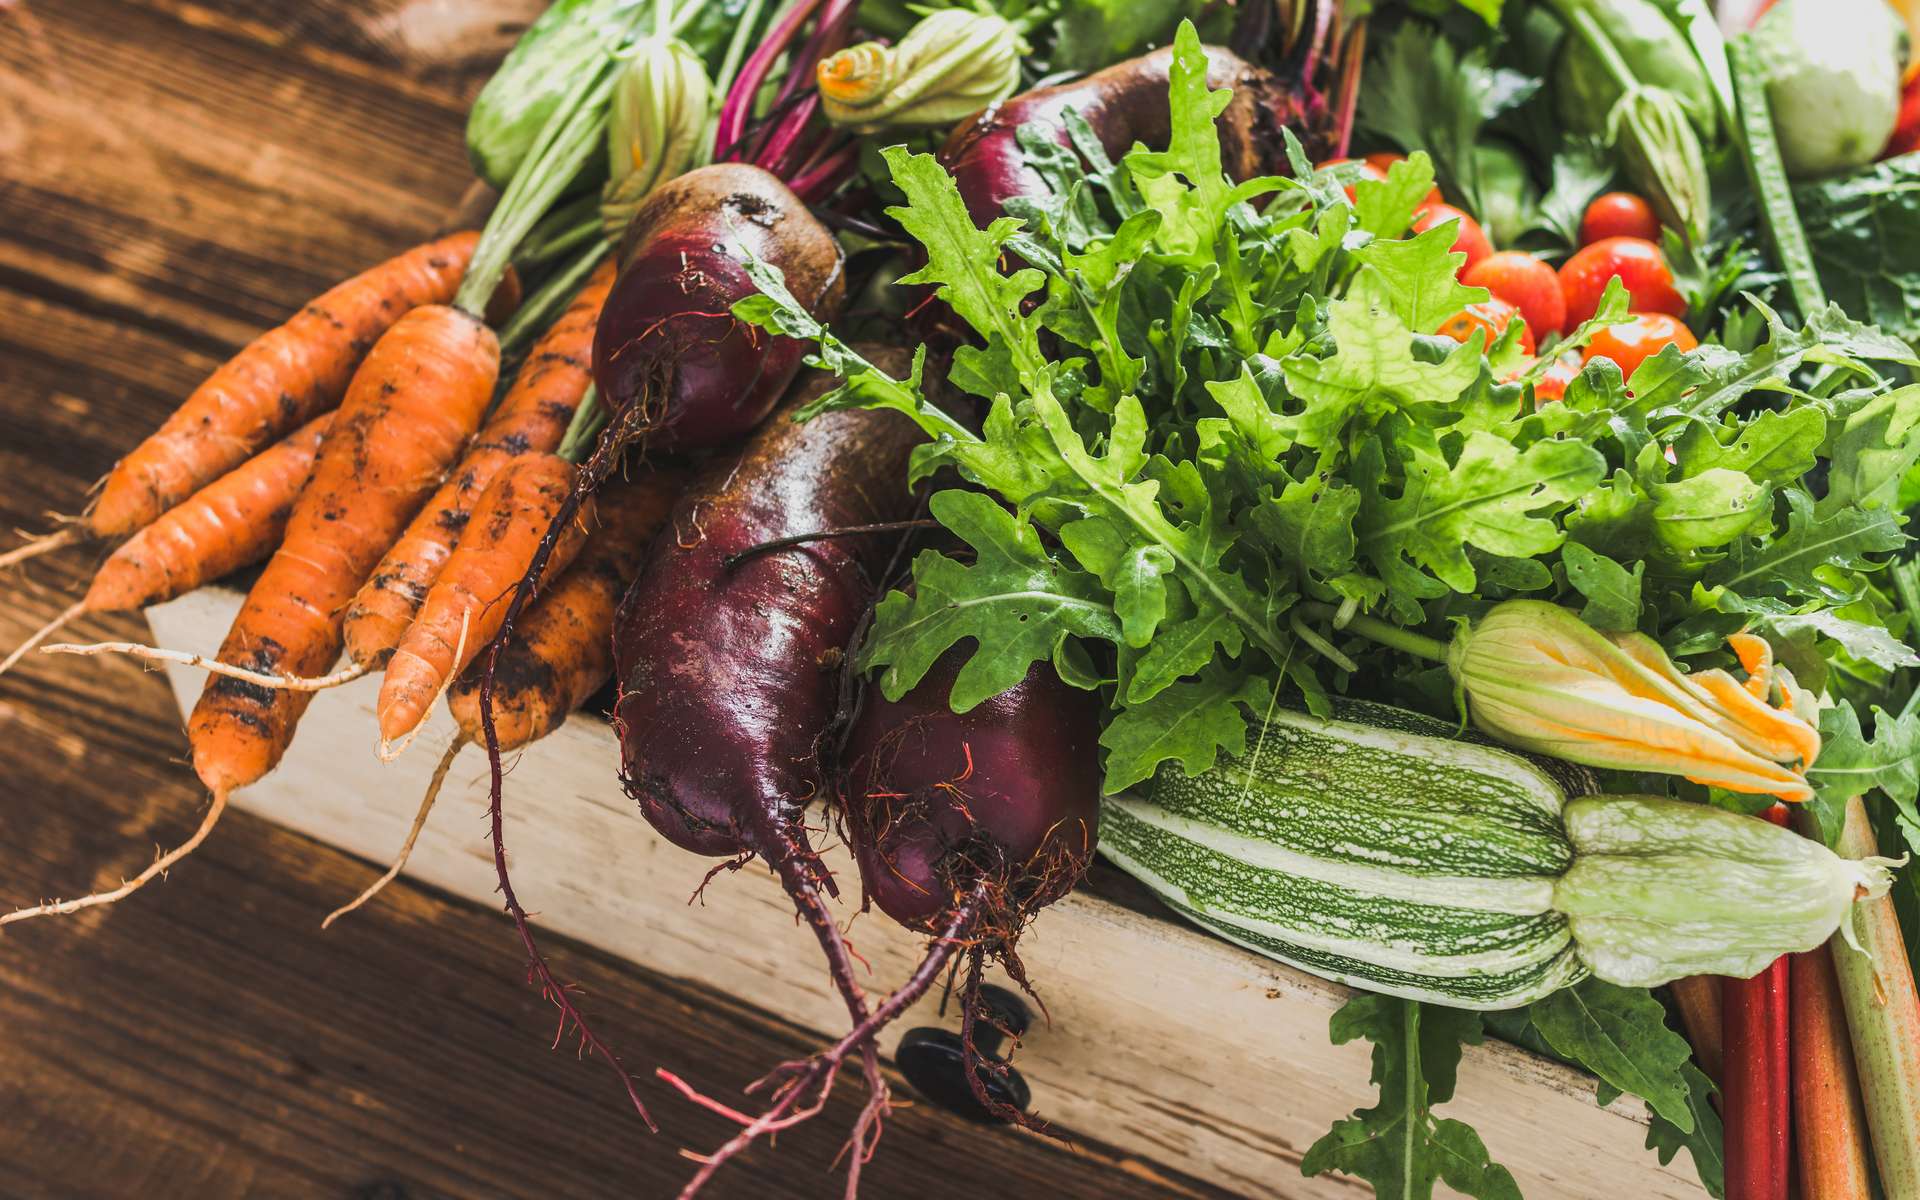 Une alimentation végétale de bonne qualité diminuerait de 22 % le risque de développer un cancer colorectal chez les hommes